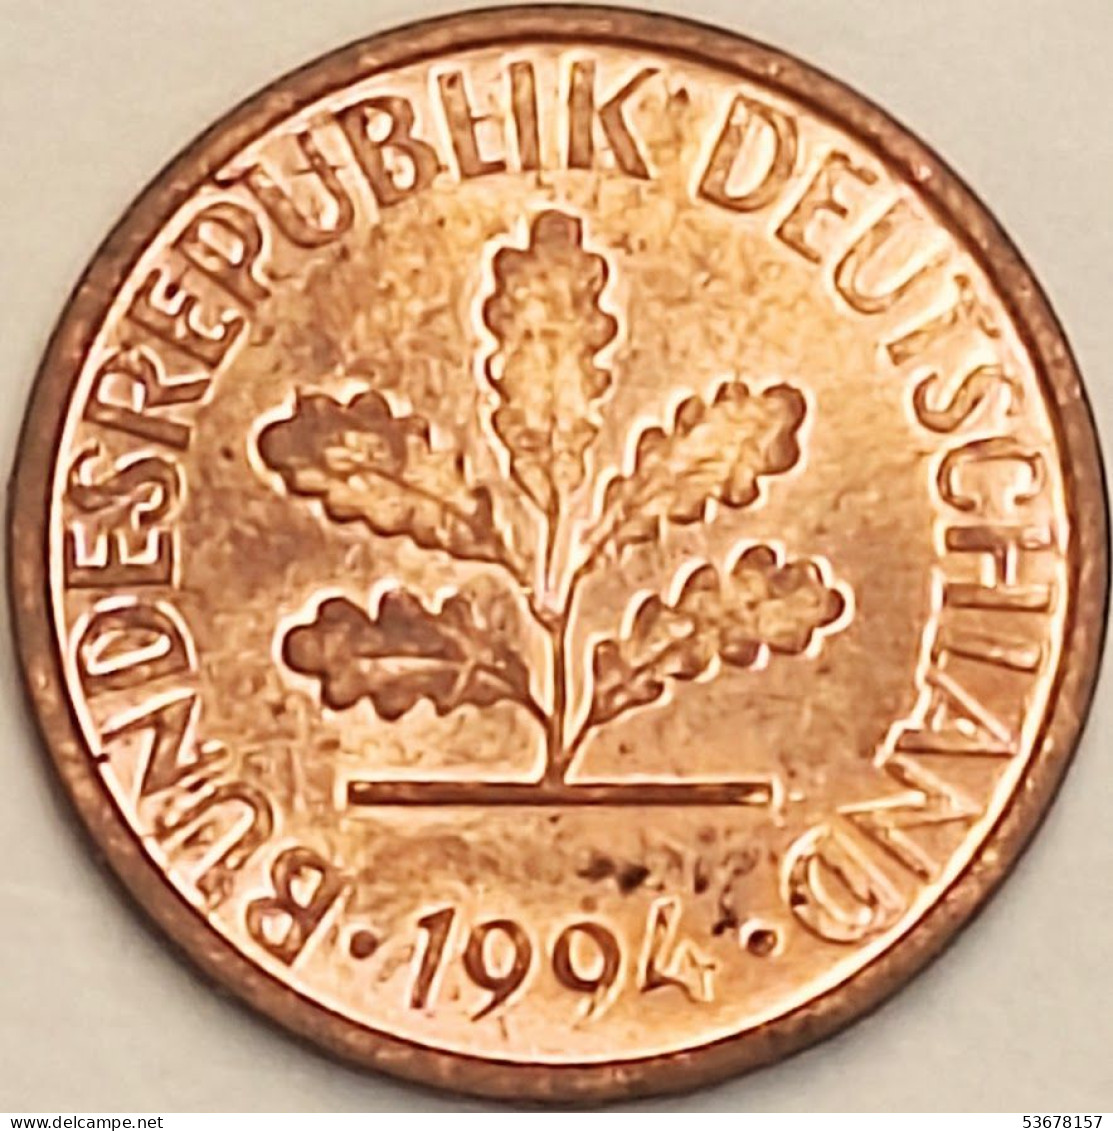 Germany Federal Republic - Pfennig 1994 A, KM# 105 (#4509) - 1 Pfennig